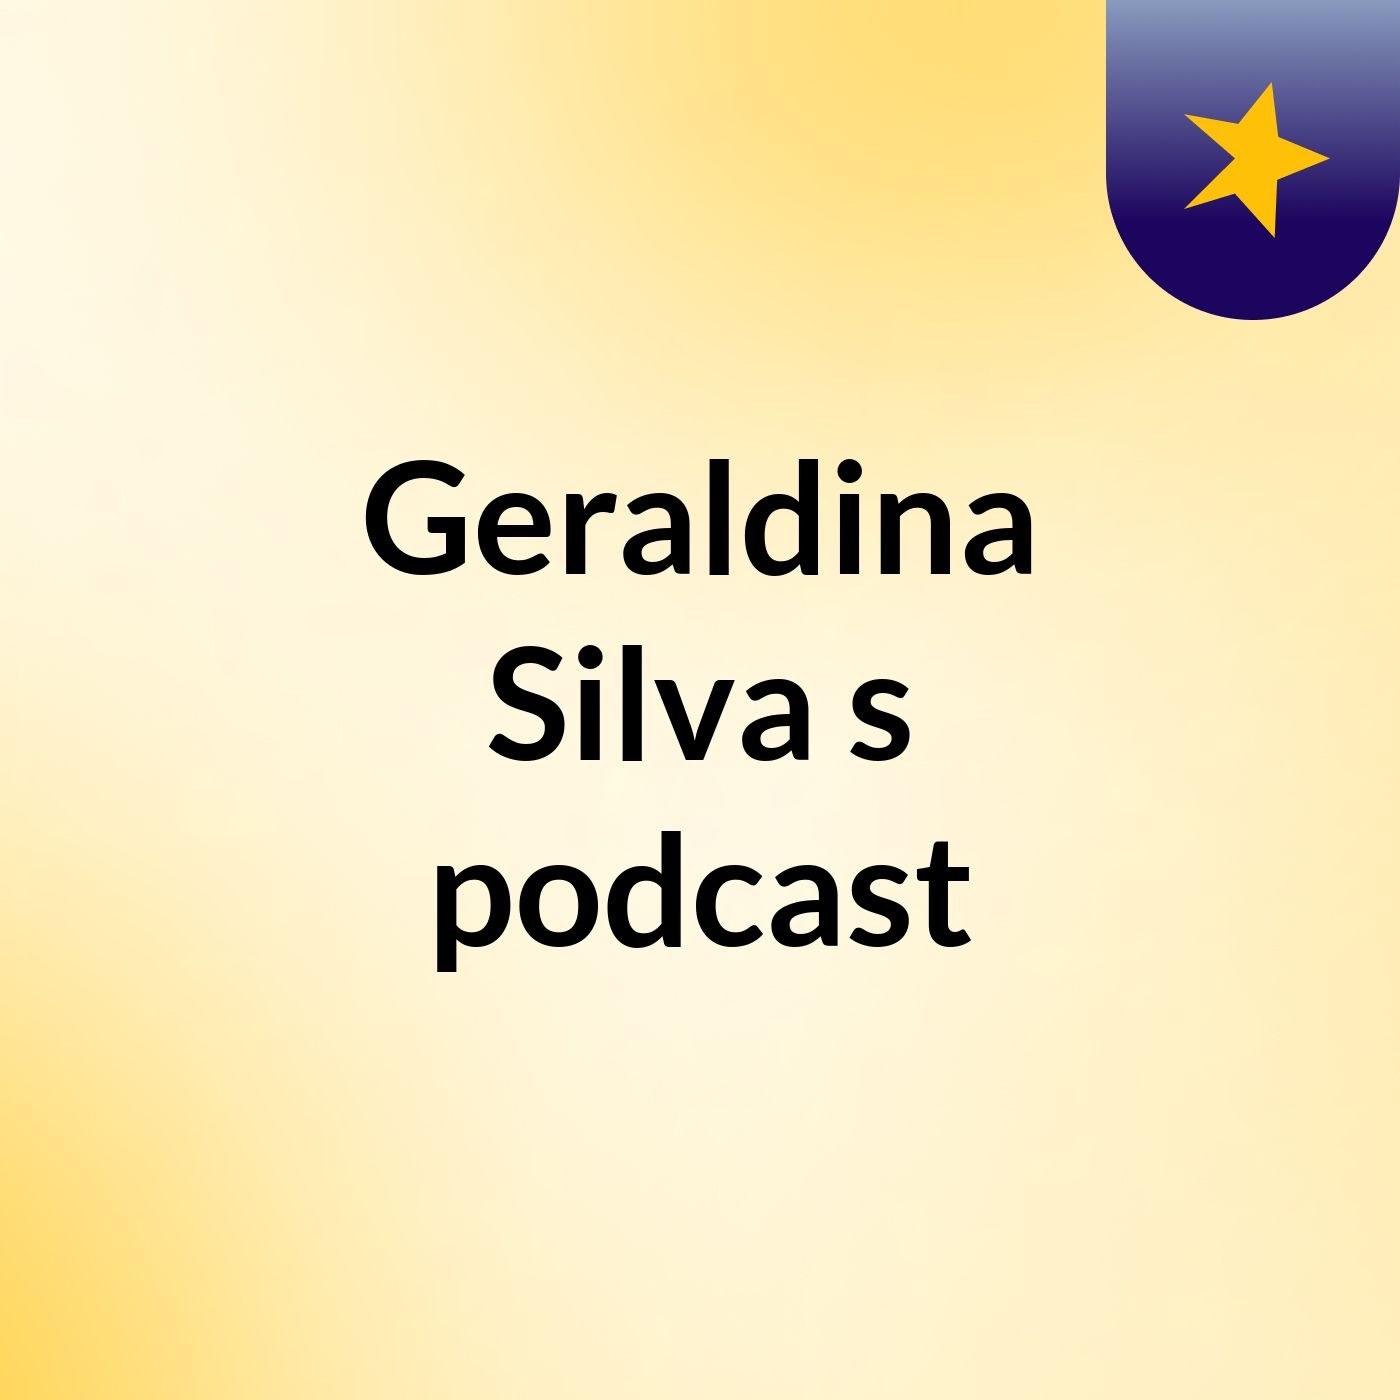 Geraldina Silva's podcast